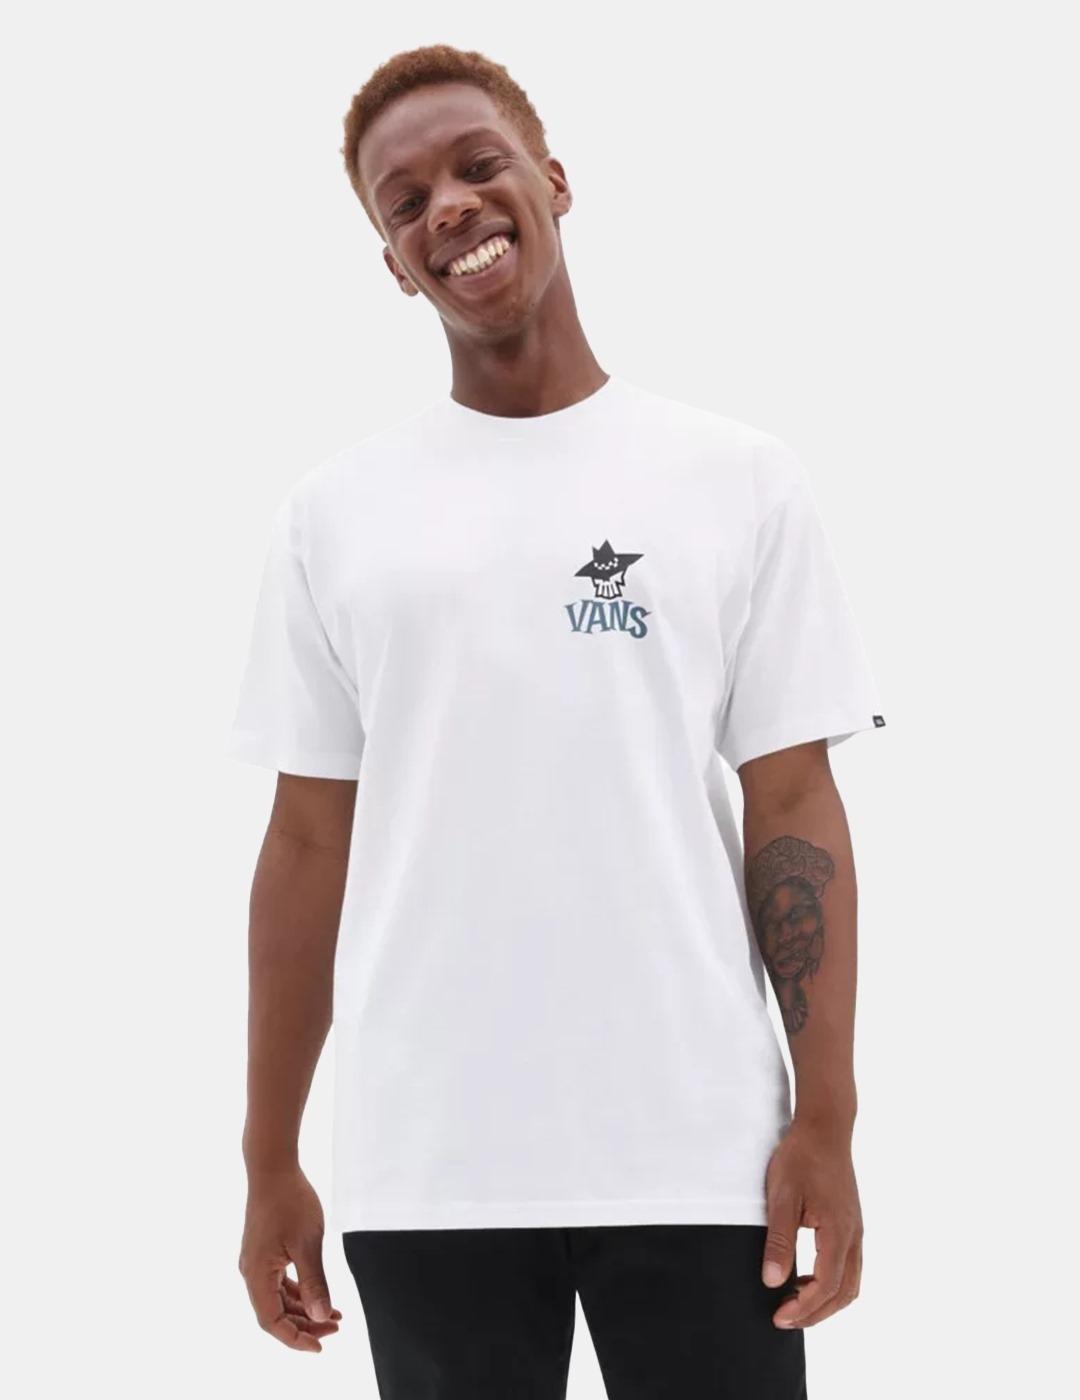 Camiseta Vans Sketchy Friend Blanco